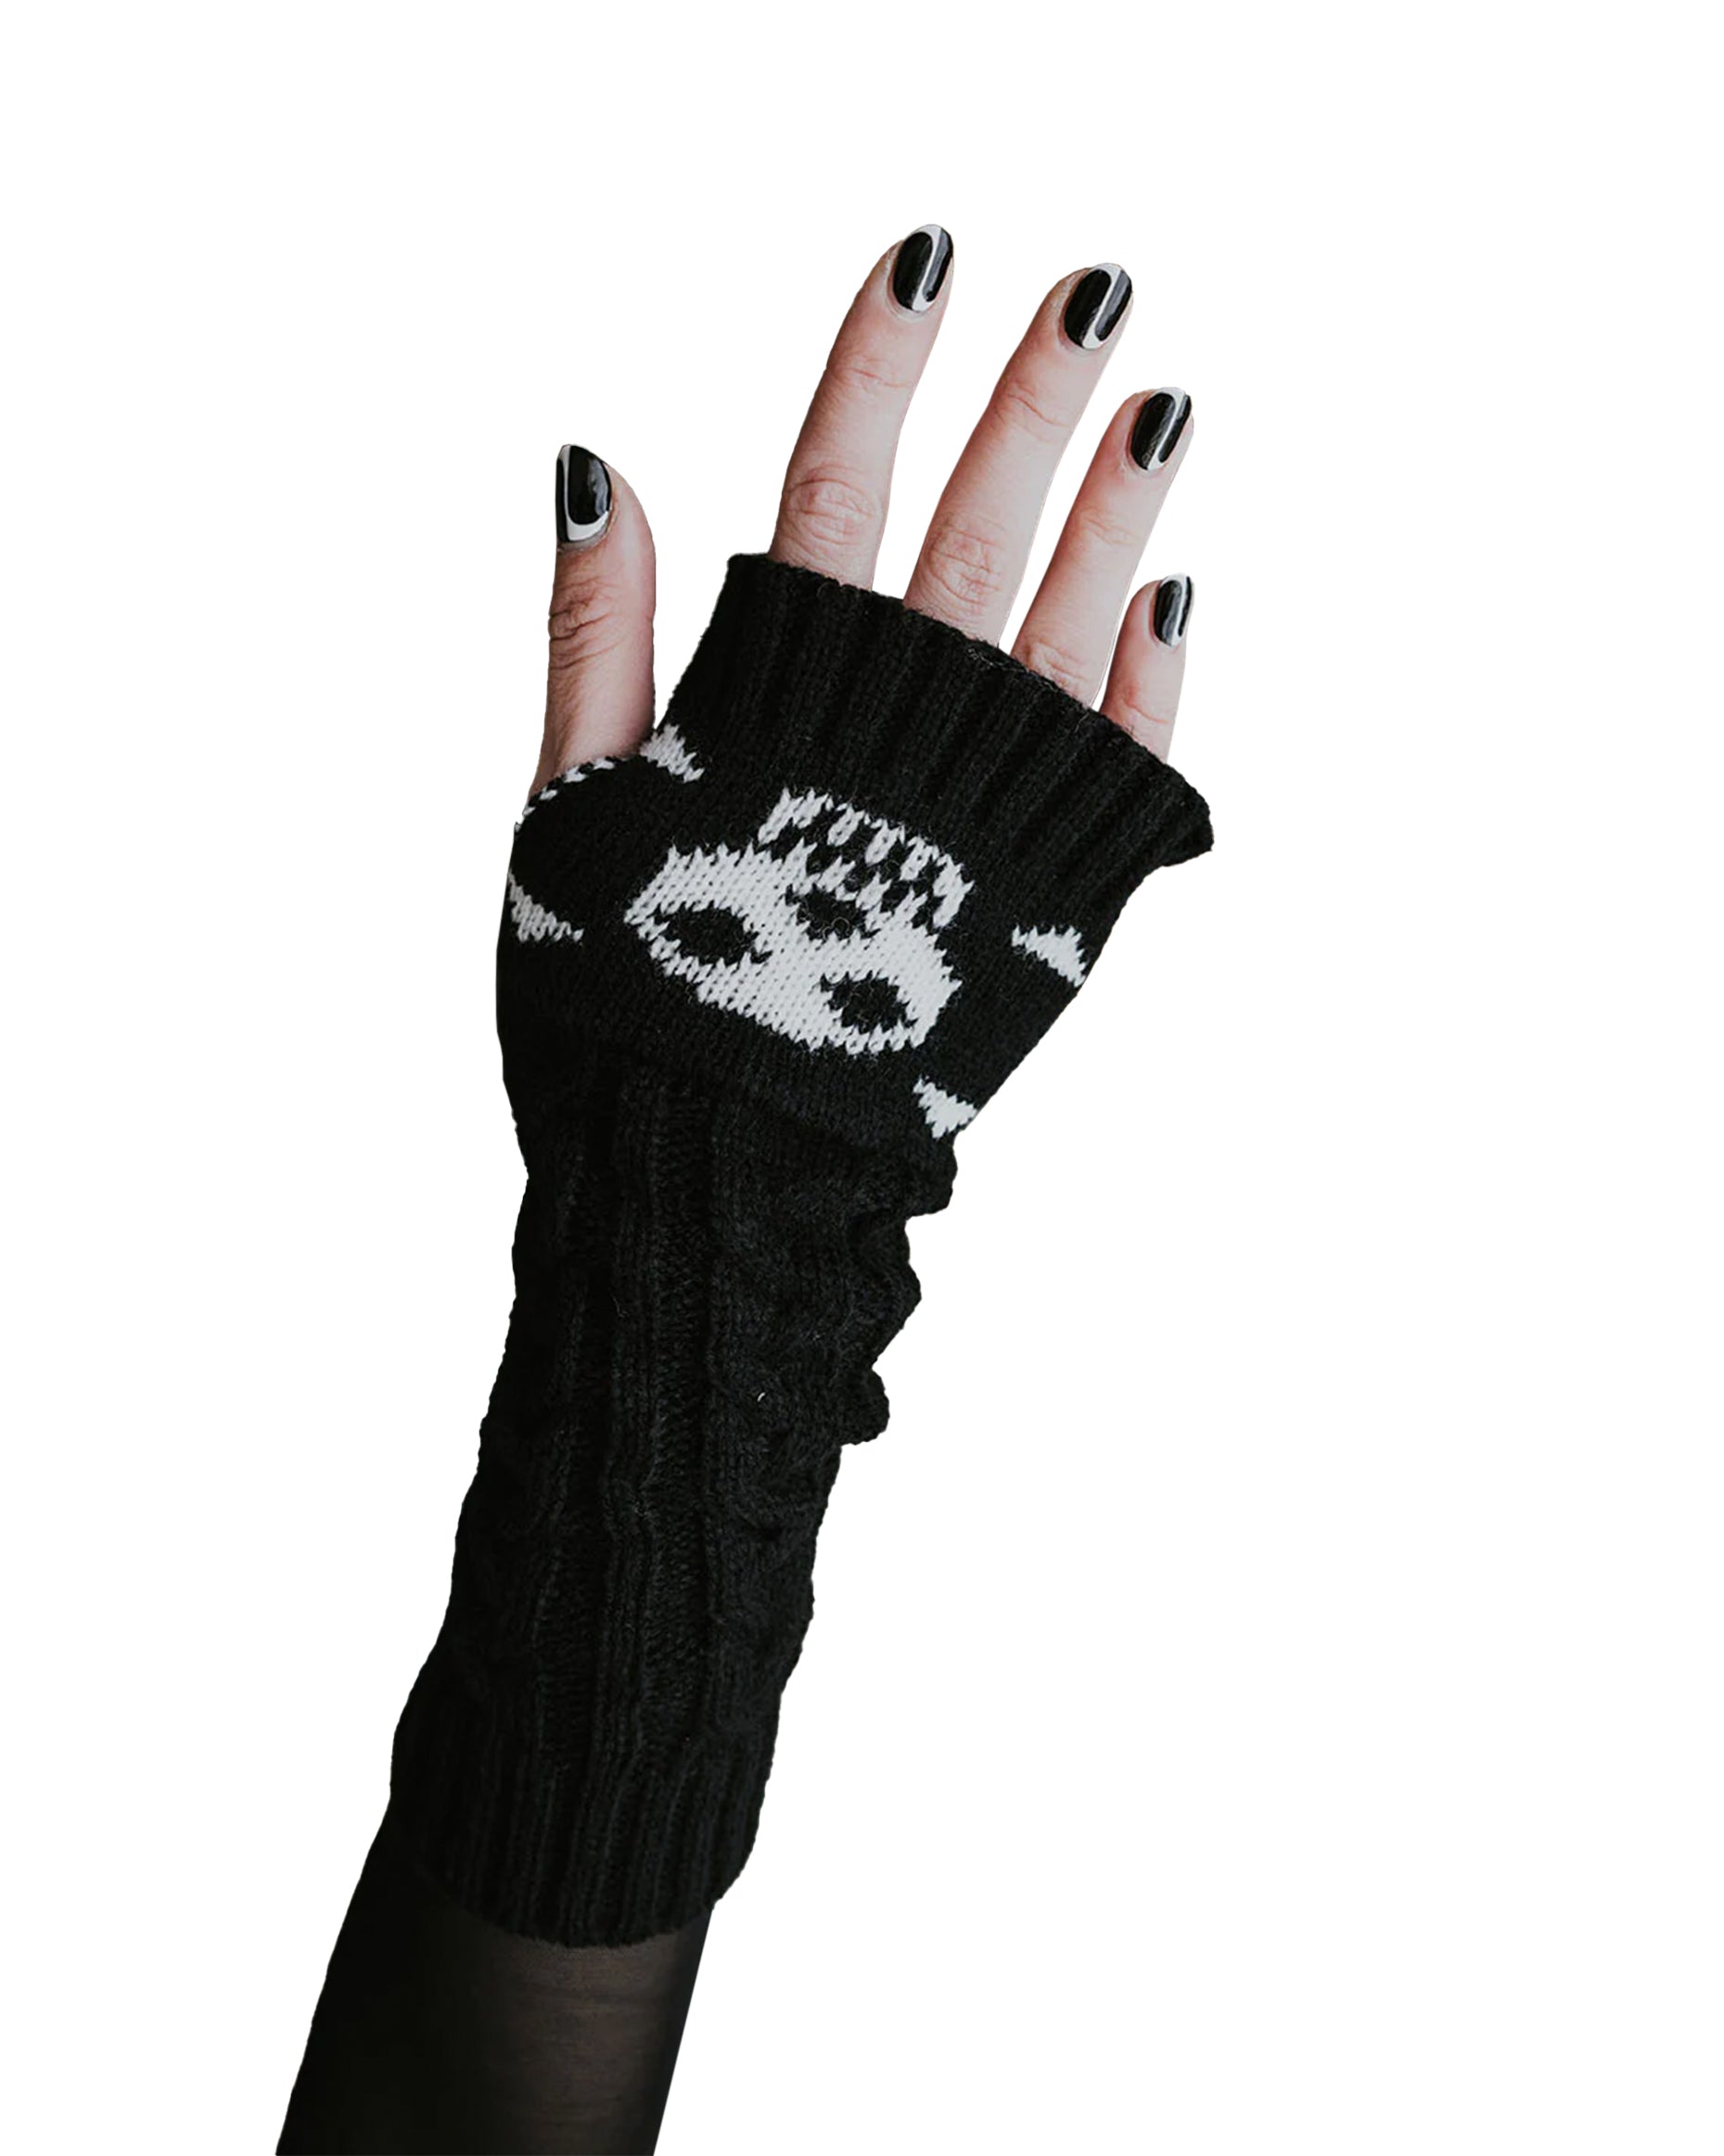 Pamela Mann Skull & Crossbone Fingerless Gloves - Black chunky knitted long fingerless arm warmer sleeves with a stylised skull and crossbone design.